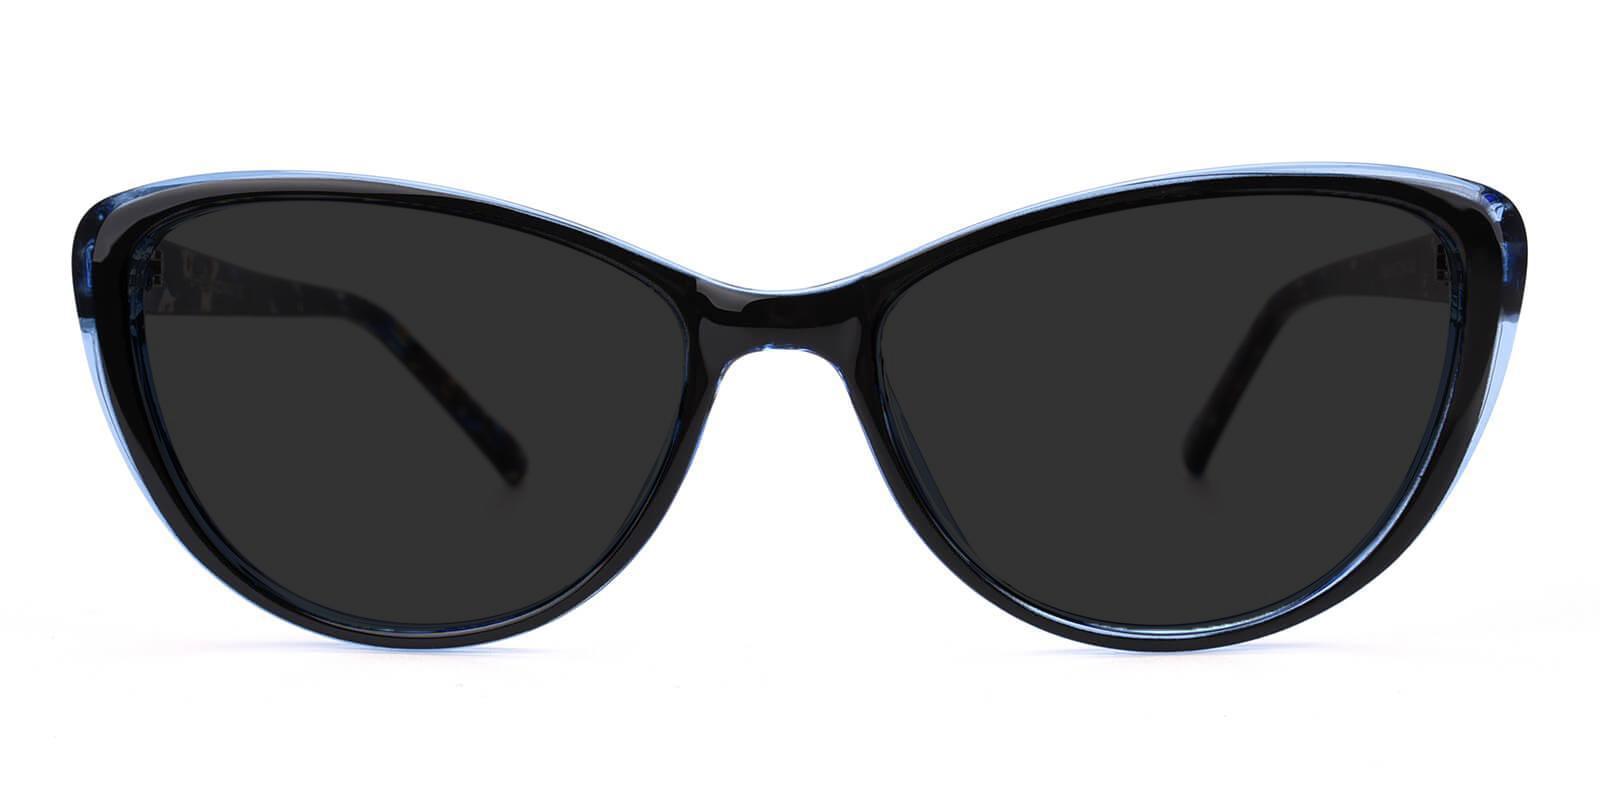 Morla Blue Plastic Sunglasses , UniversalBridgeFit Frames from ABBE Glasses